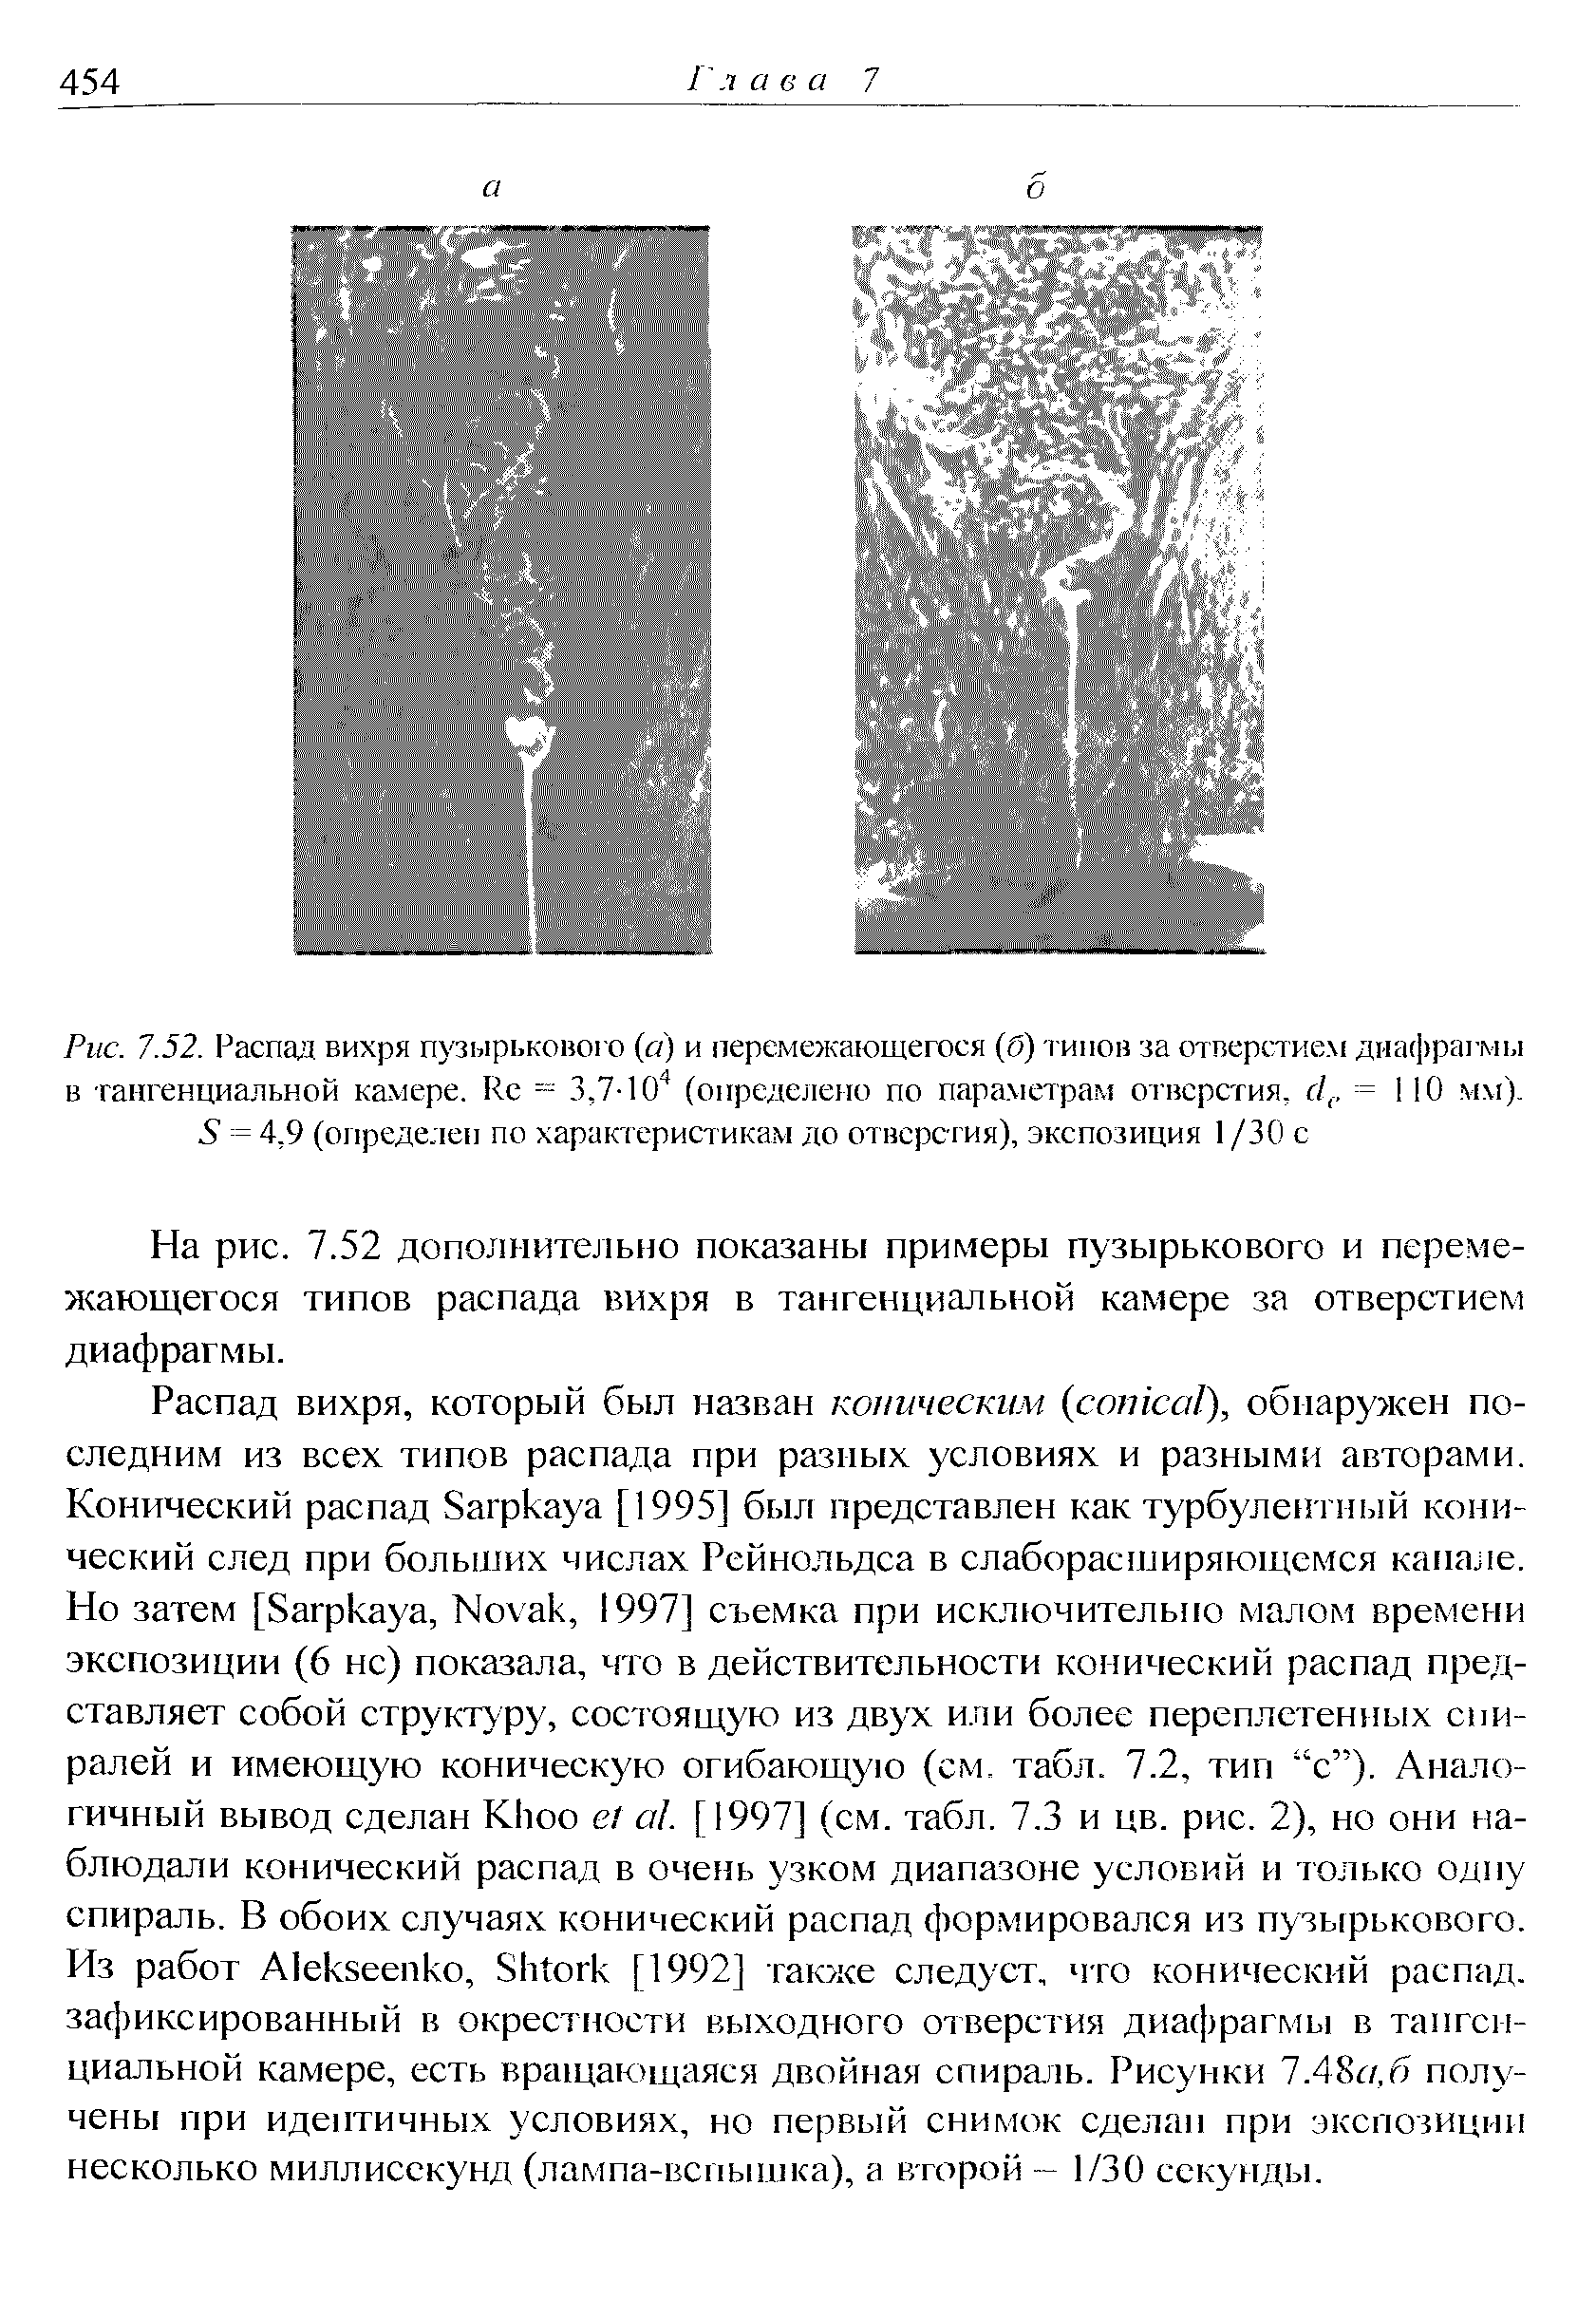 Рис. 7.52. <a href="/info/238303">Распад вихря пузырькового</a> (а) и перемежающегося (б) типов за отверстием диафрагмы в тангенциальной камере. Ке = 3,7-(определено по параметрам отверстия, с ,. = 110 мм). 6 = 4,9 (определен по характеристикам до отверстия), экспозиция I /30 с
